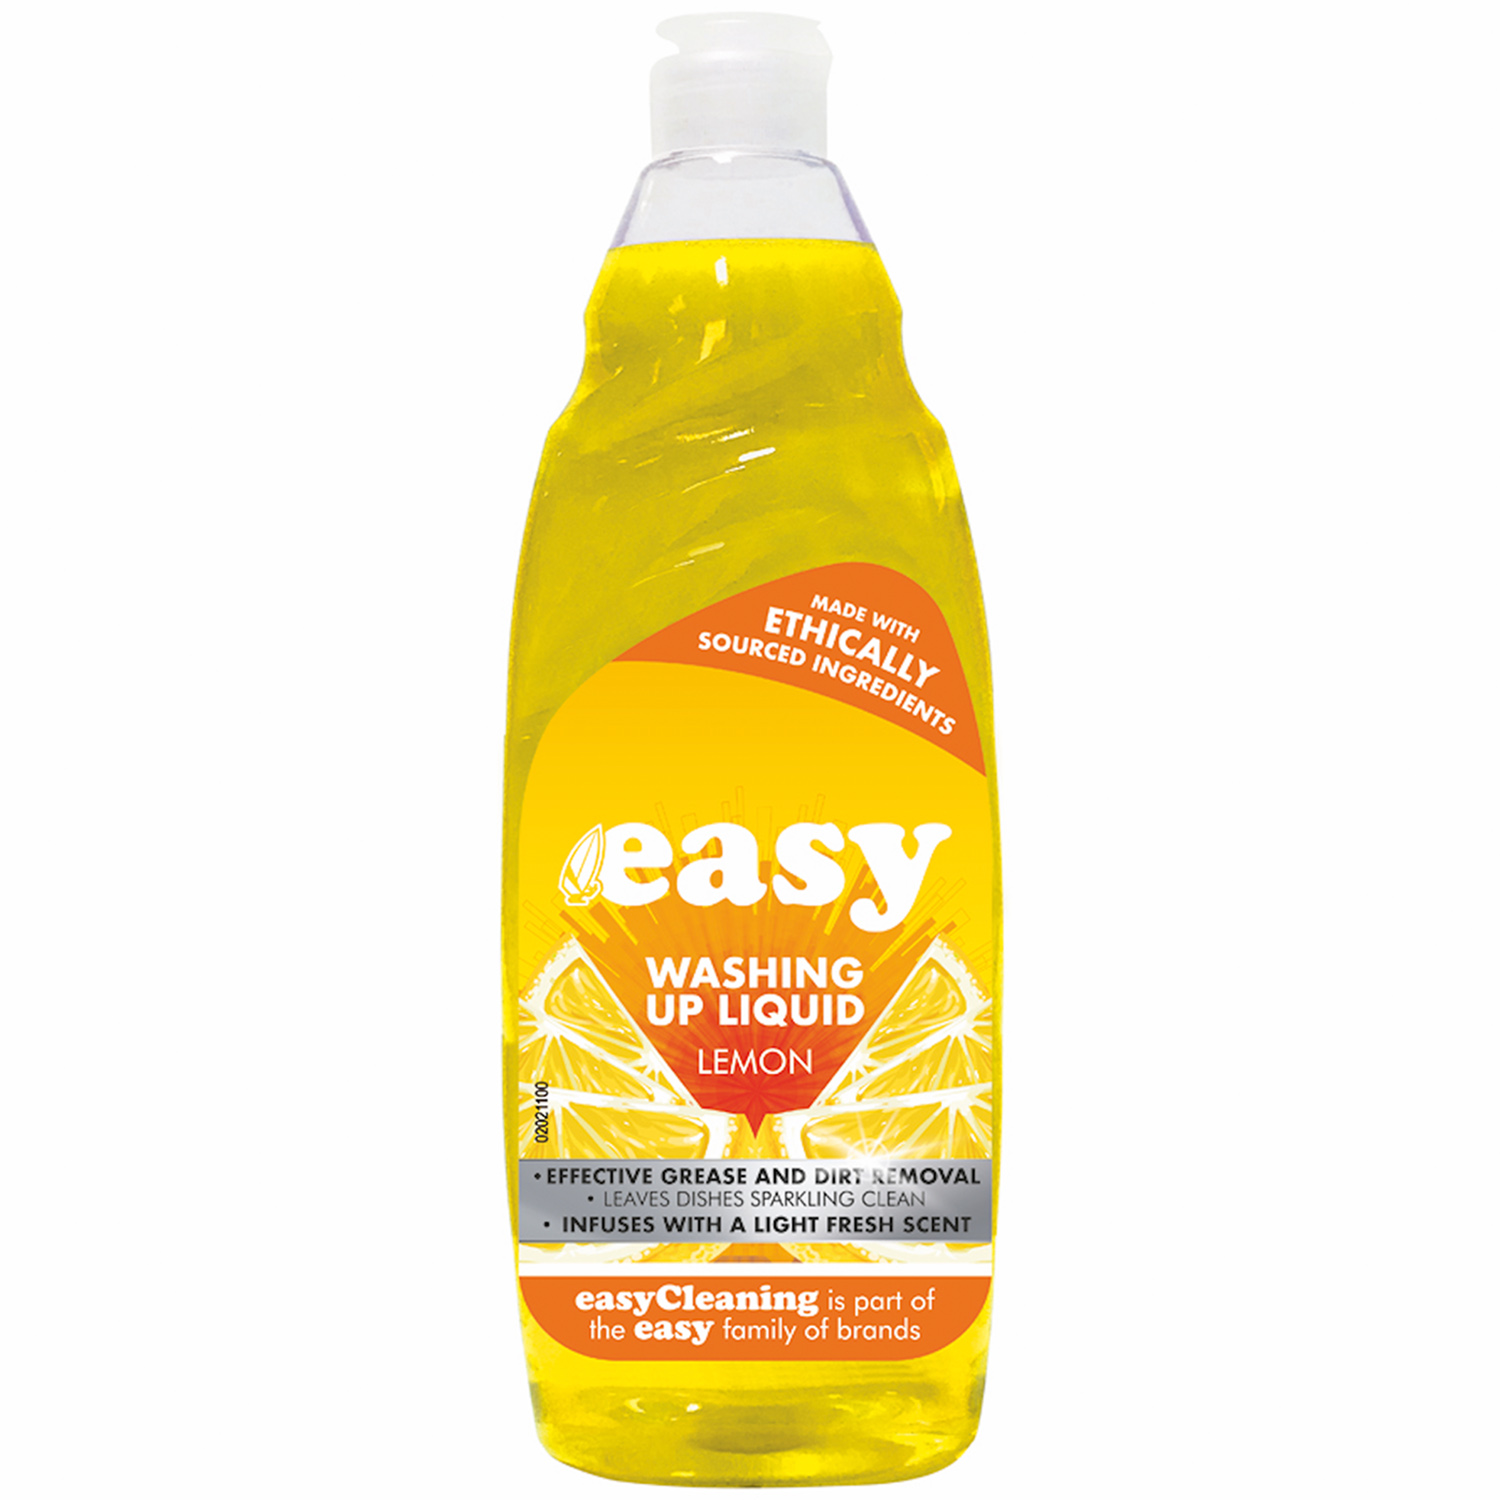 Easy Washing Up Liquid Lemon 500ml Image 1